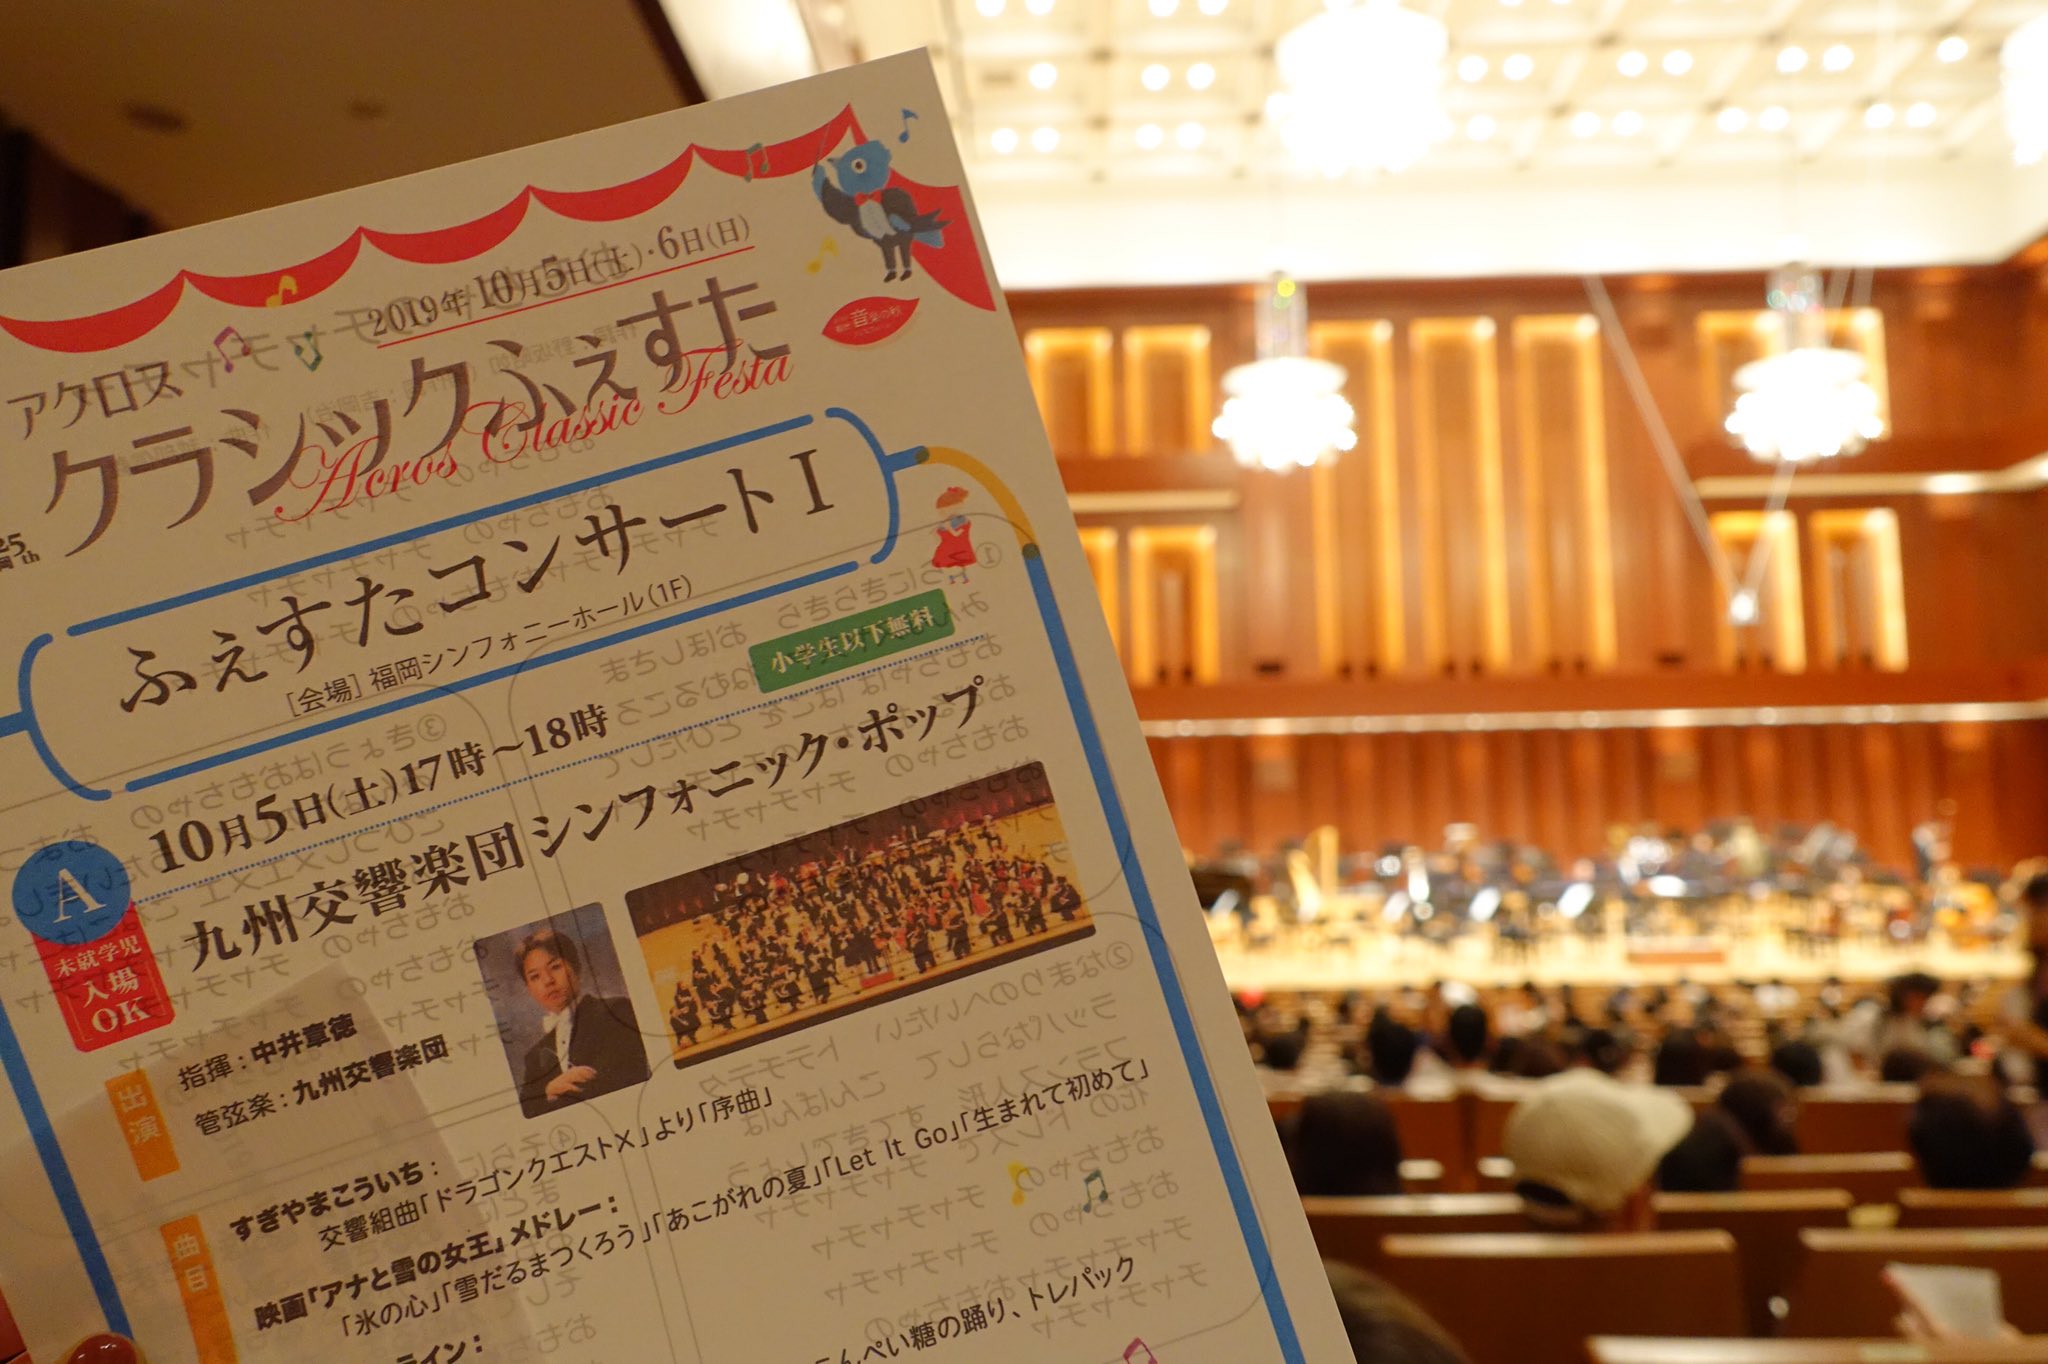 小田祐子 Yuko Oda On Twitter 九響さんのファミリーコンサートへ 大学の同級生 首席オーボエ奏者の佐藤太一さん Ta1 Oboe の音を現地で聴けました 学生時代一緒にオケやアンサンブルをしていた仲間なので 彼の音を聴けてとても感慨深かった 会場は満席で 大人